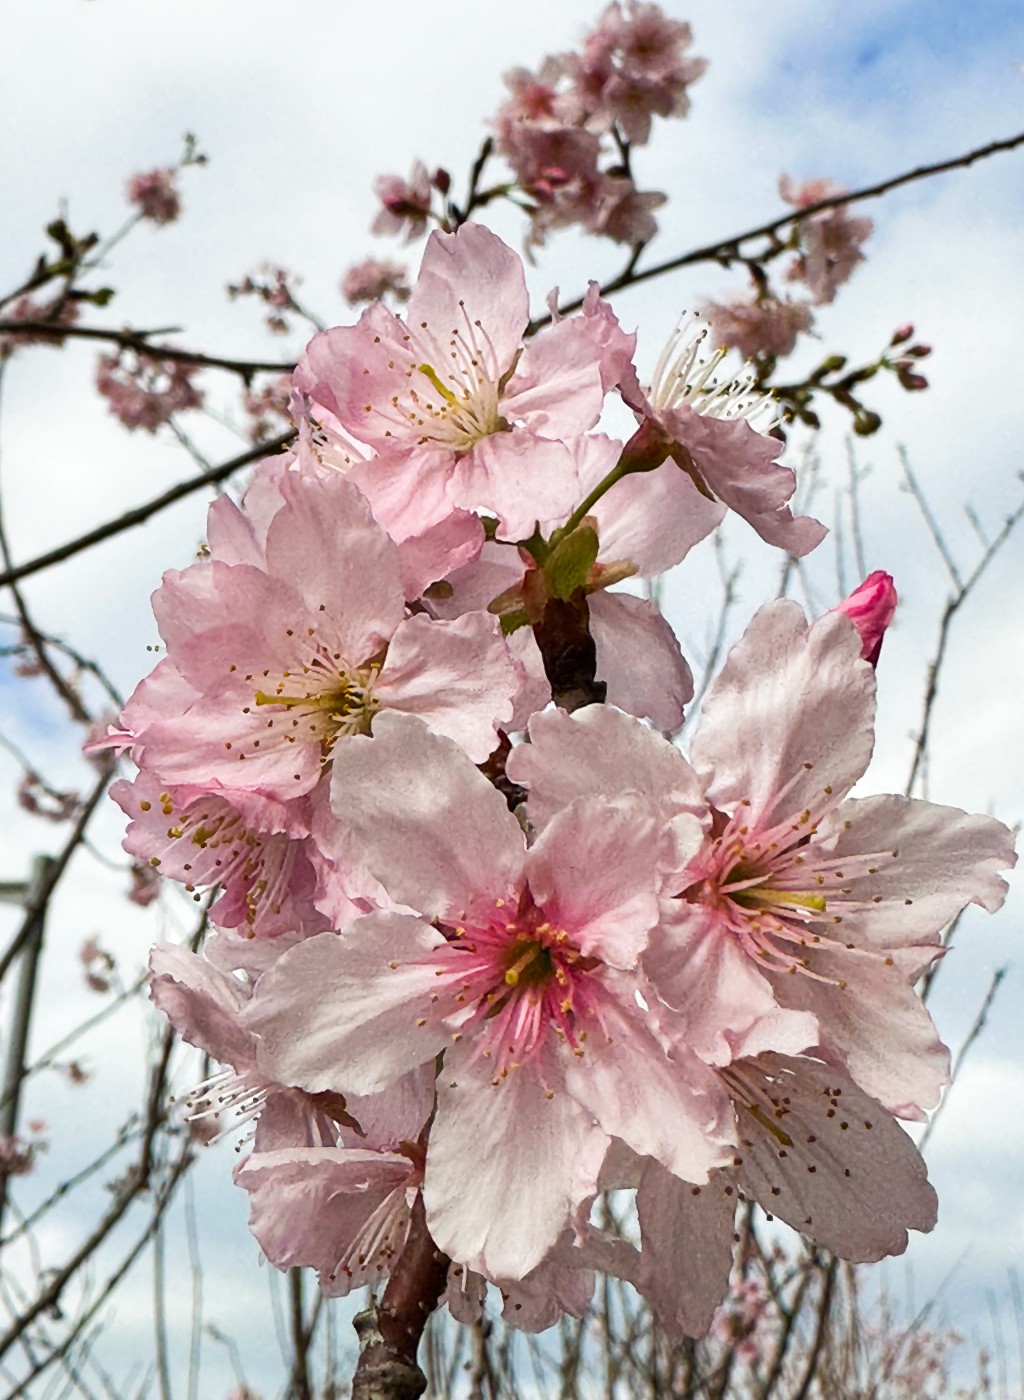 拍摄樱花小贴士：近距离用微距镜拍摄，尽量将樱花放大，樱花会更清晰更吸引